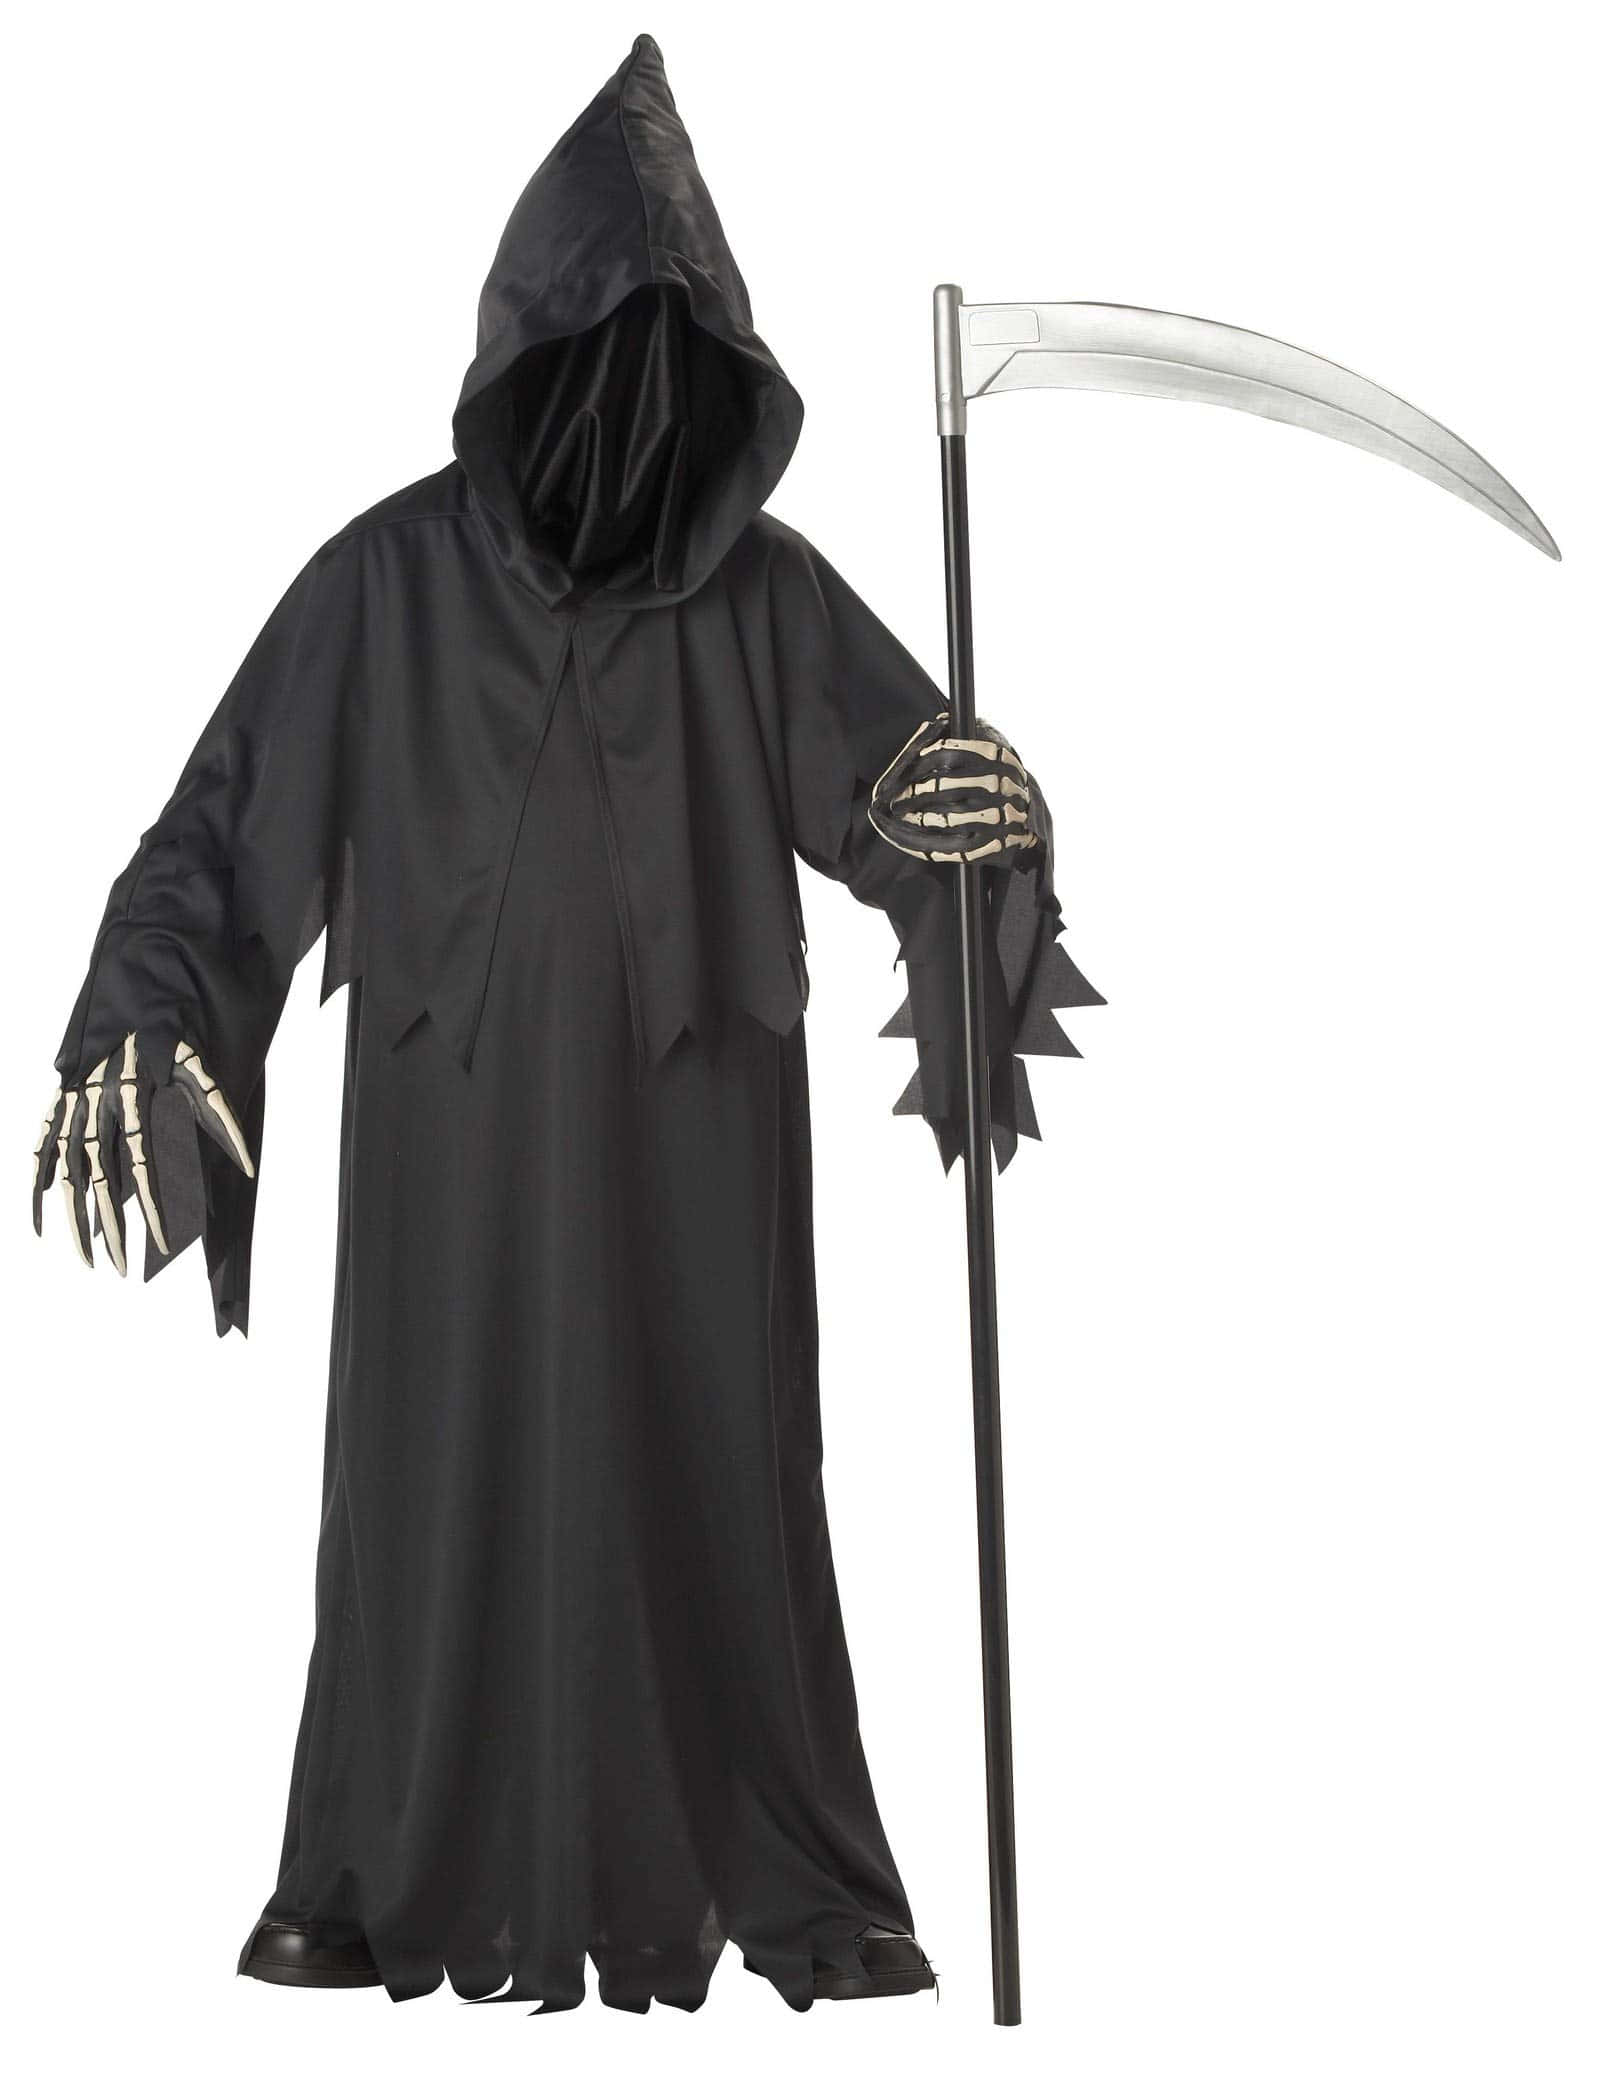 Eerie Grim Reaper in Darkness